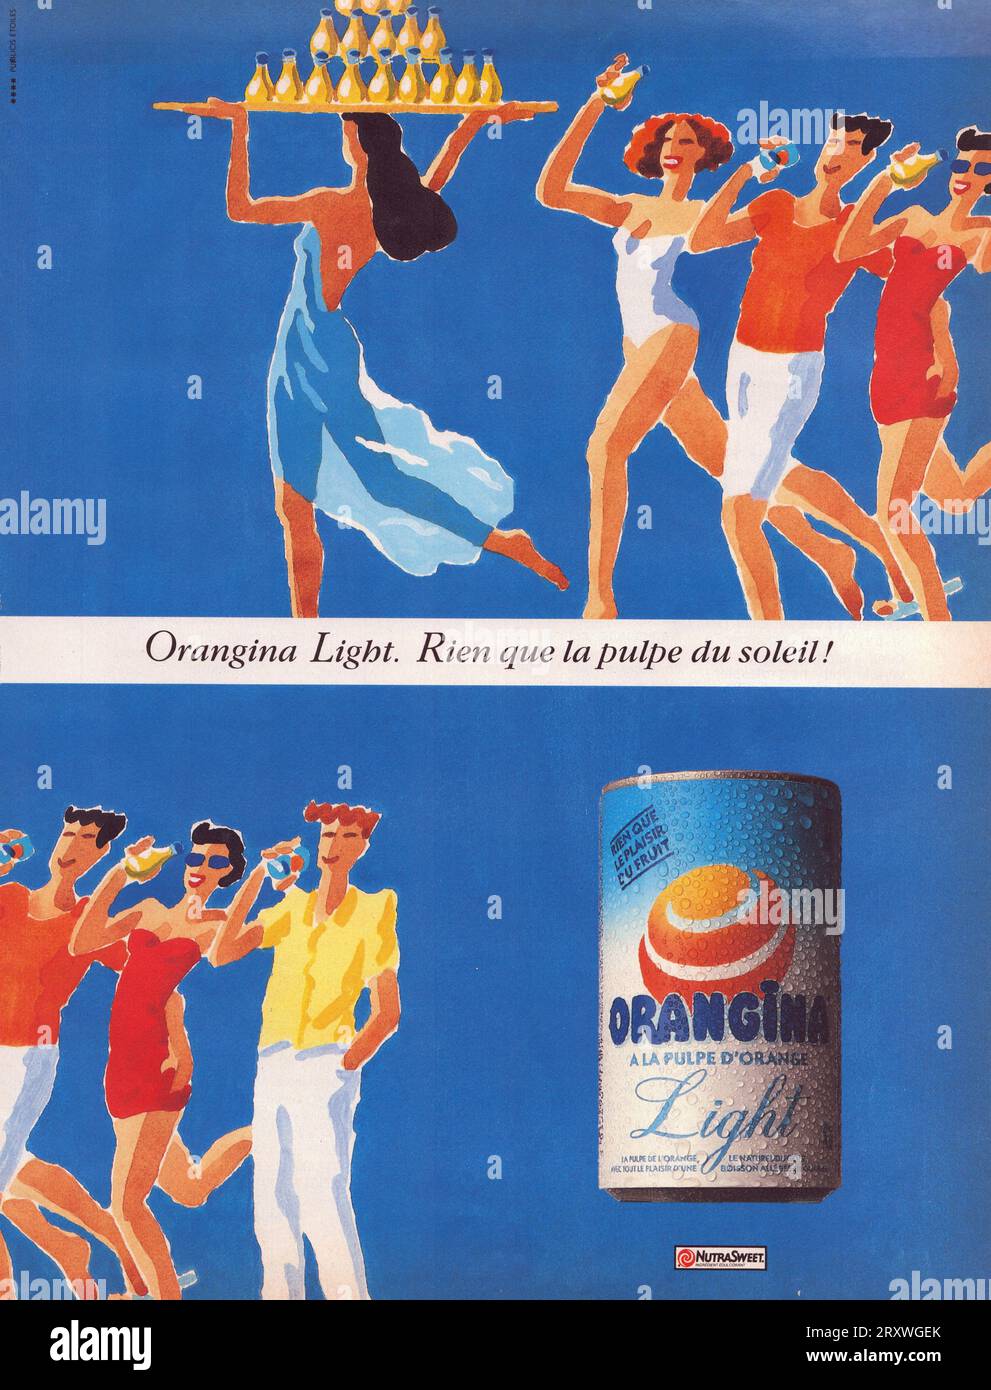 Orangina Light can Orangina advertising poster Orangina Light advertisement Stock Photo